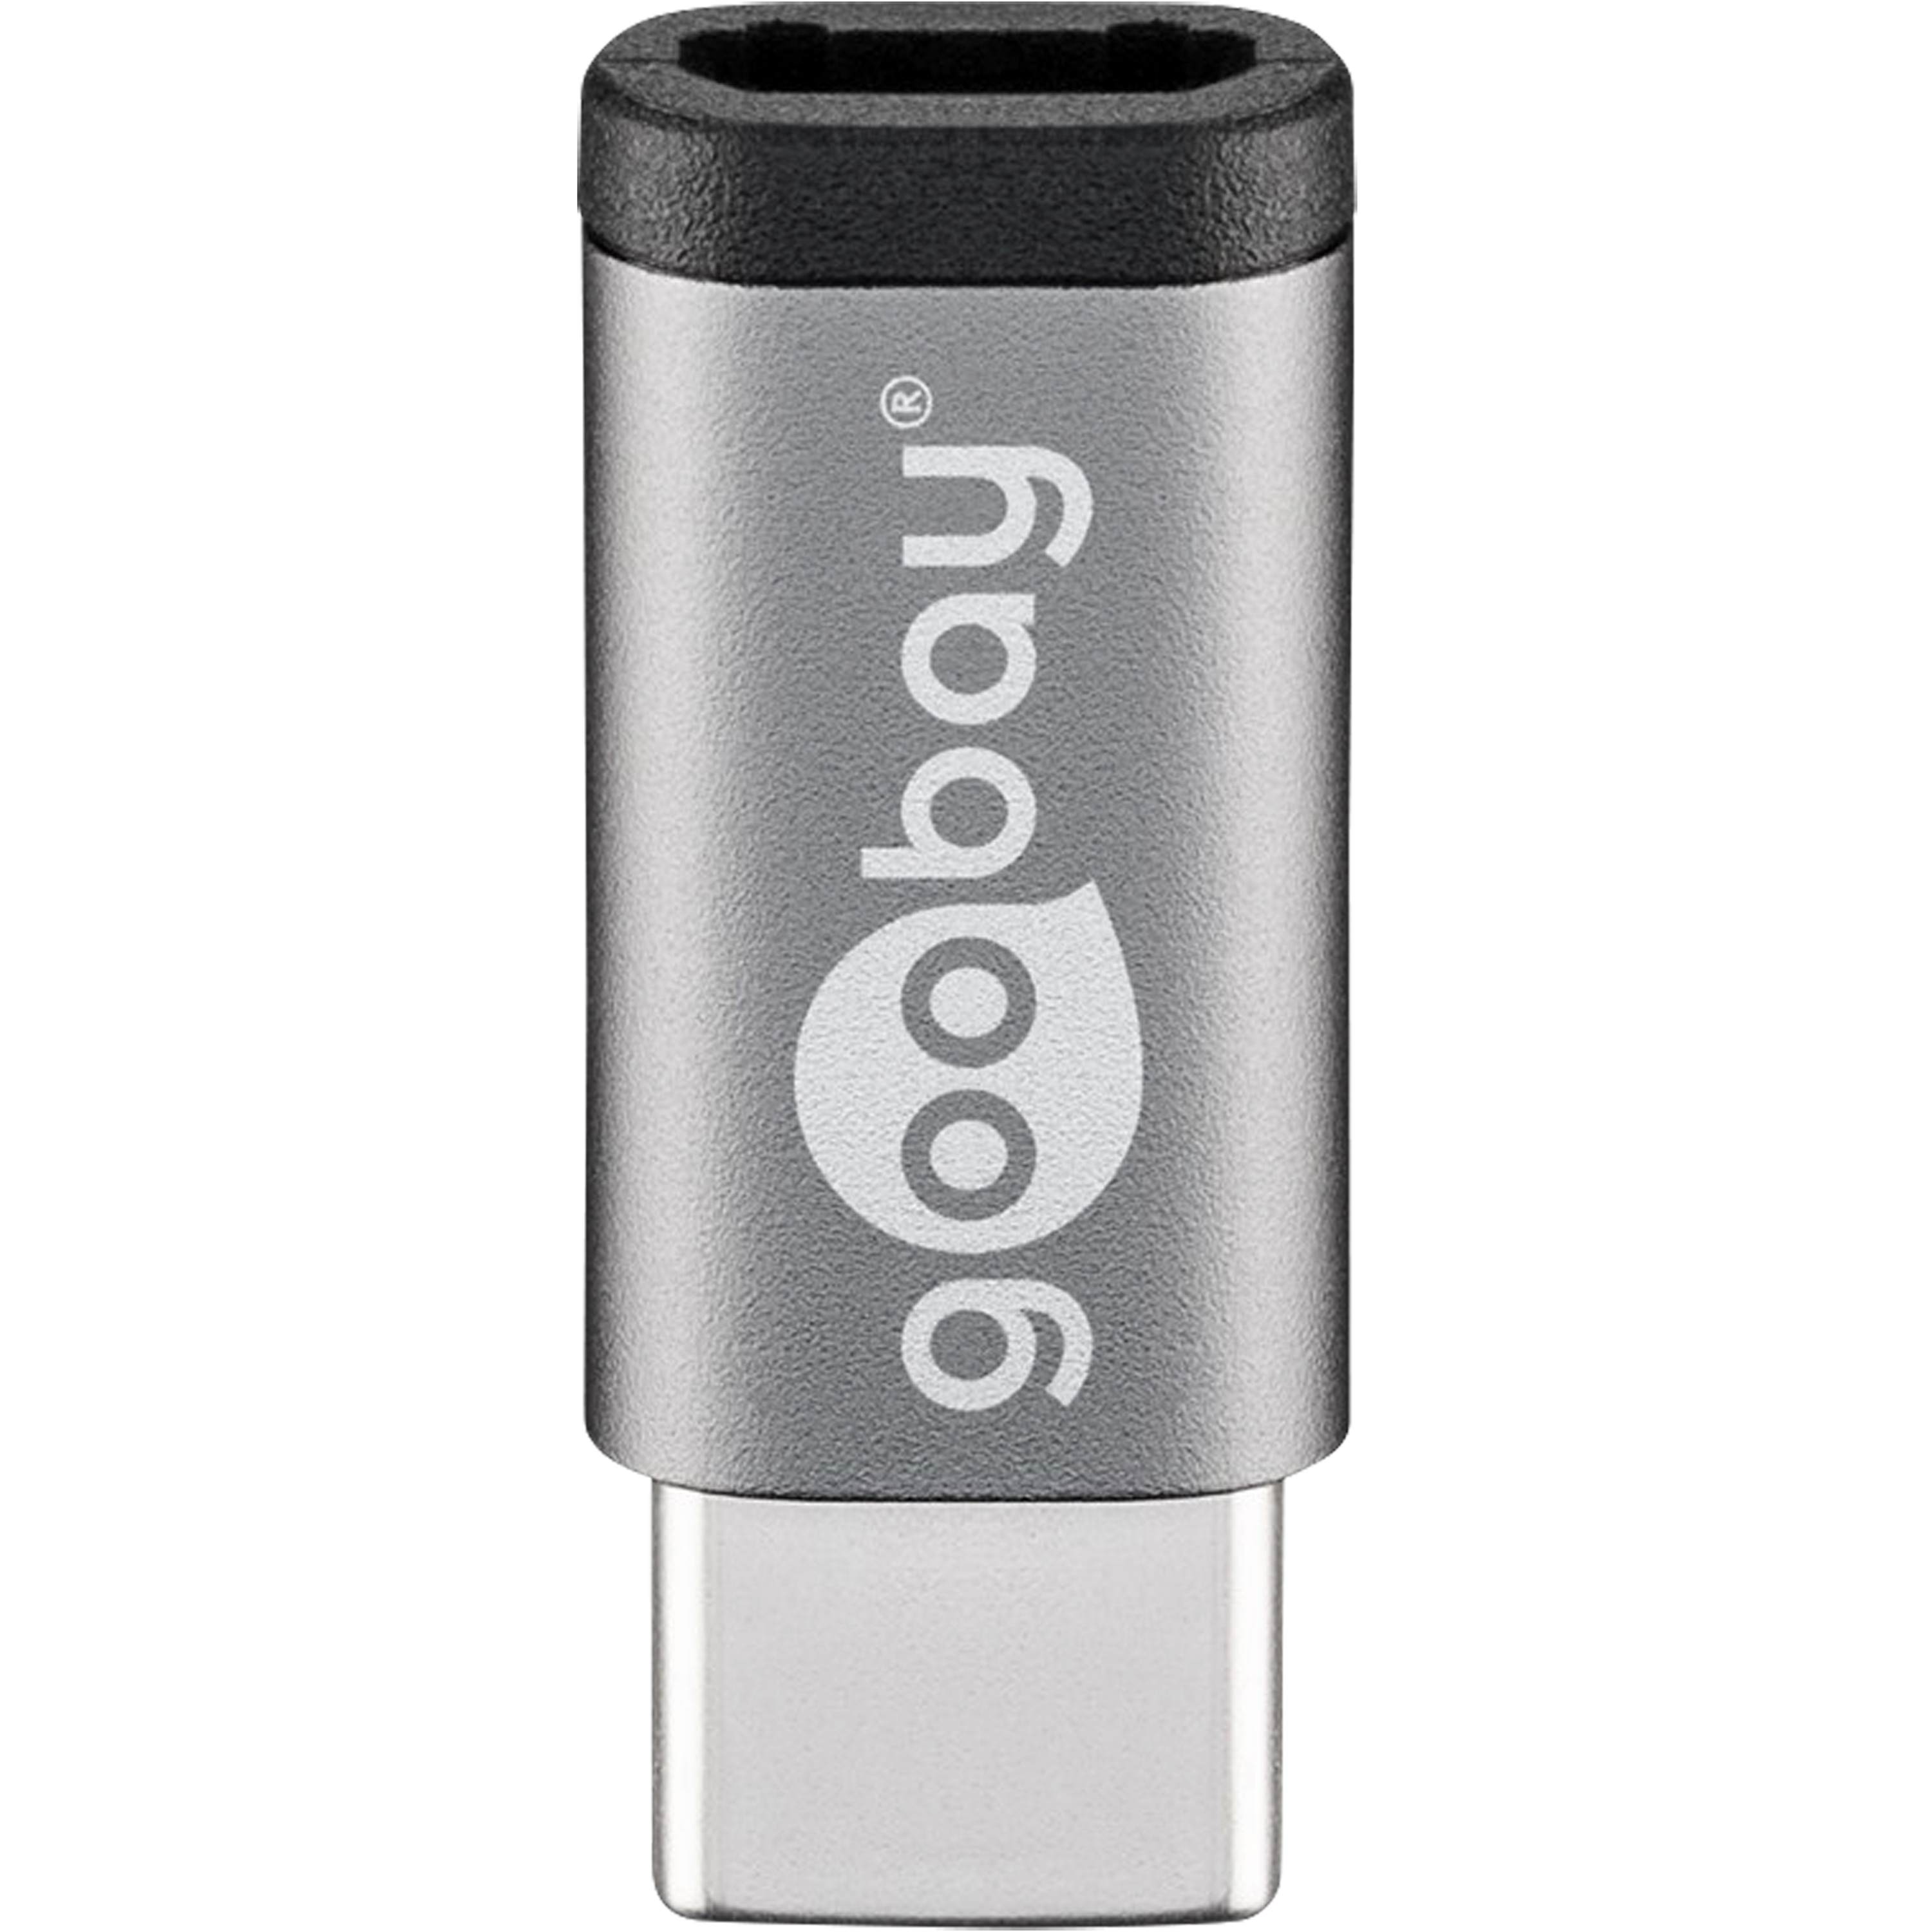 GOOBAY Adapter USB-C™ auf USB 2.0 Micro-B, zum Verbinden eines USB-C™ Gerätes mit einem USB 2.0 Micro-B Kabel